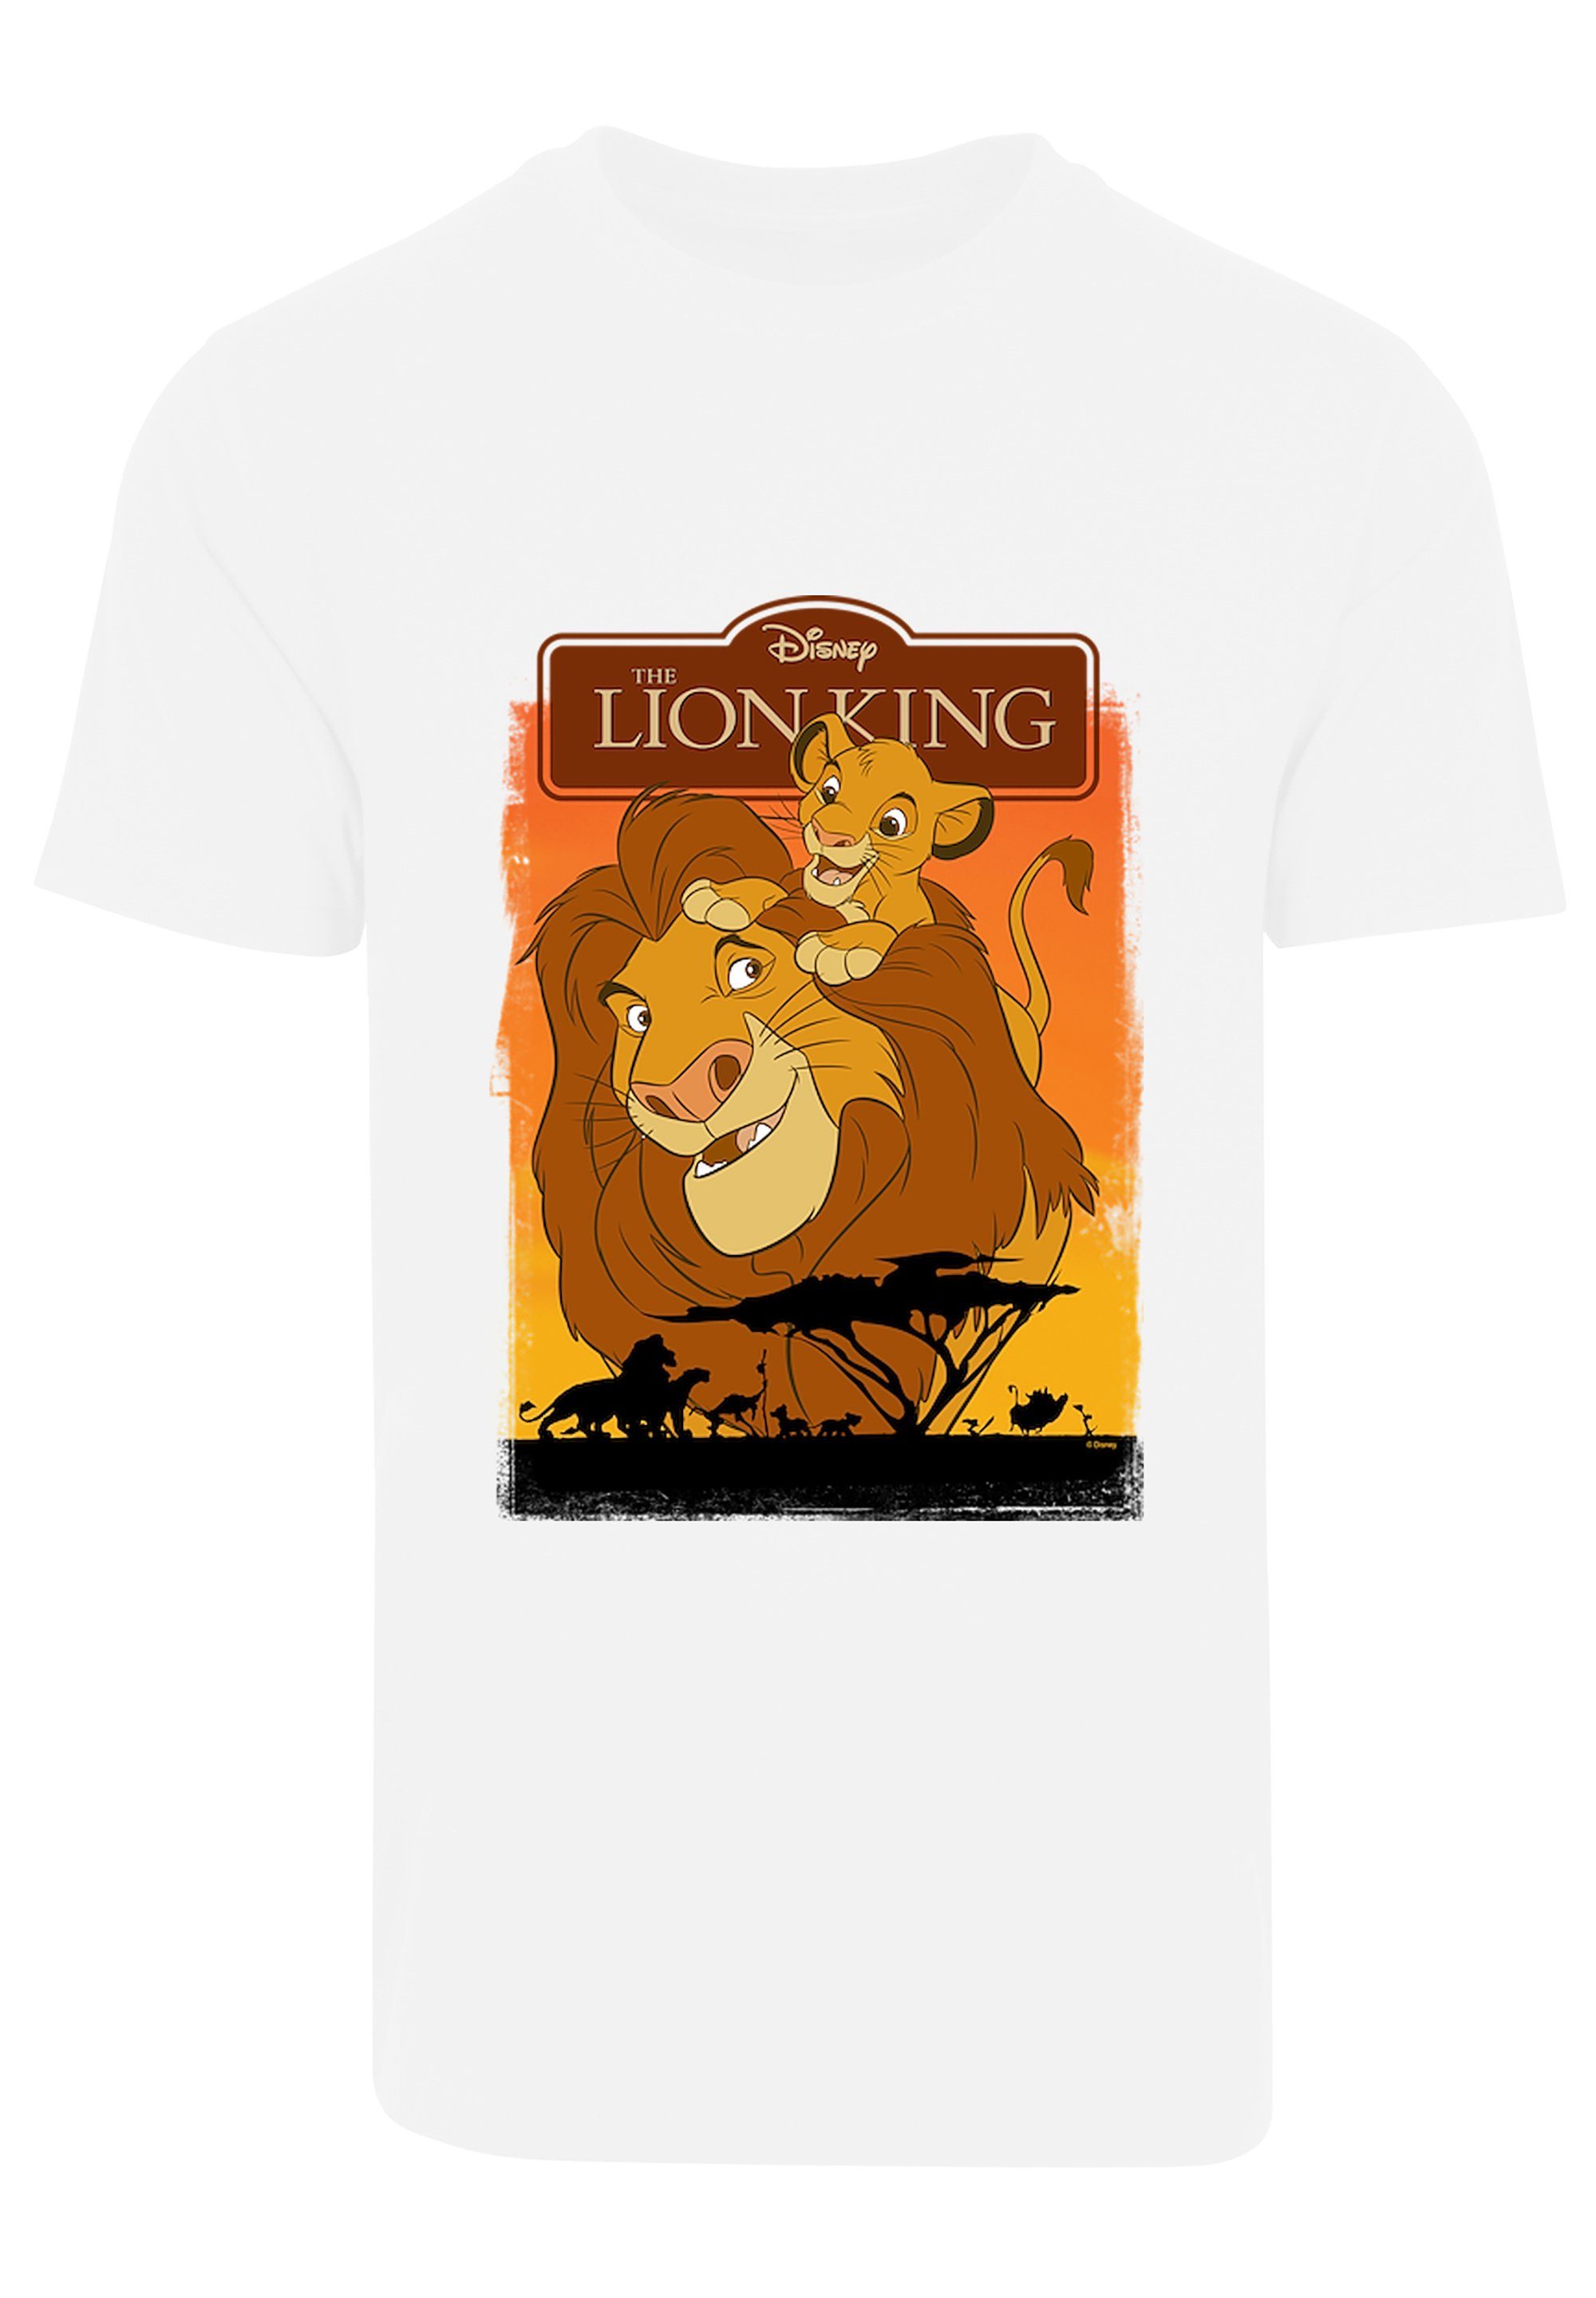 weiß Print T-Shirt König der und Löwen Simba Disney F4NT4STIC Mufasa